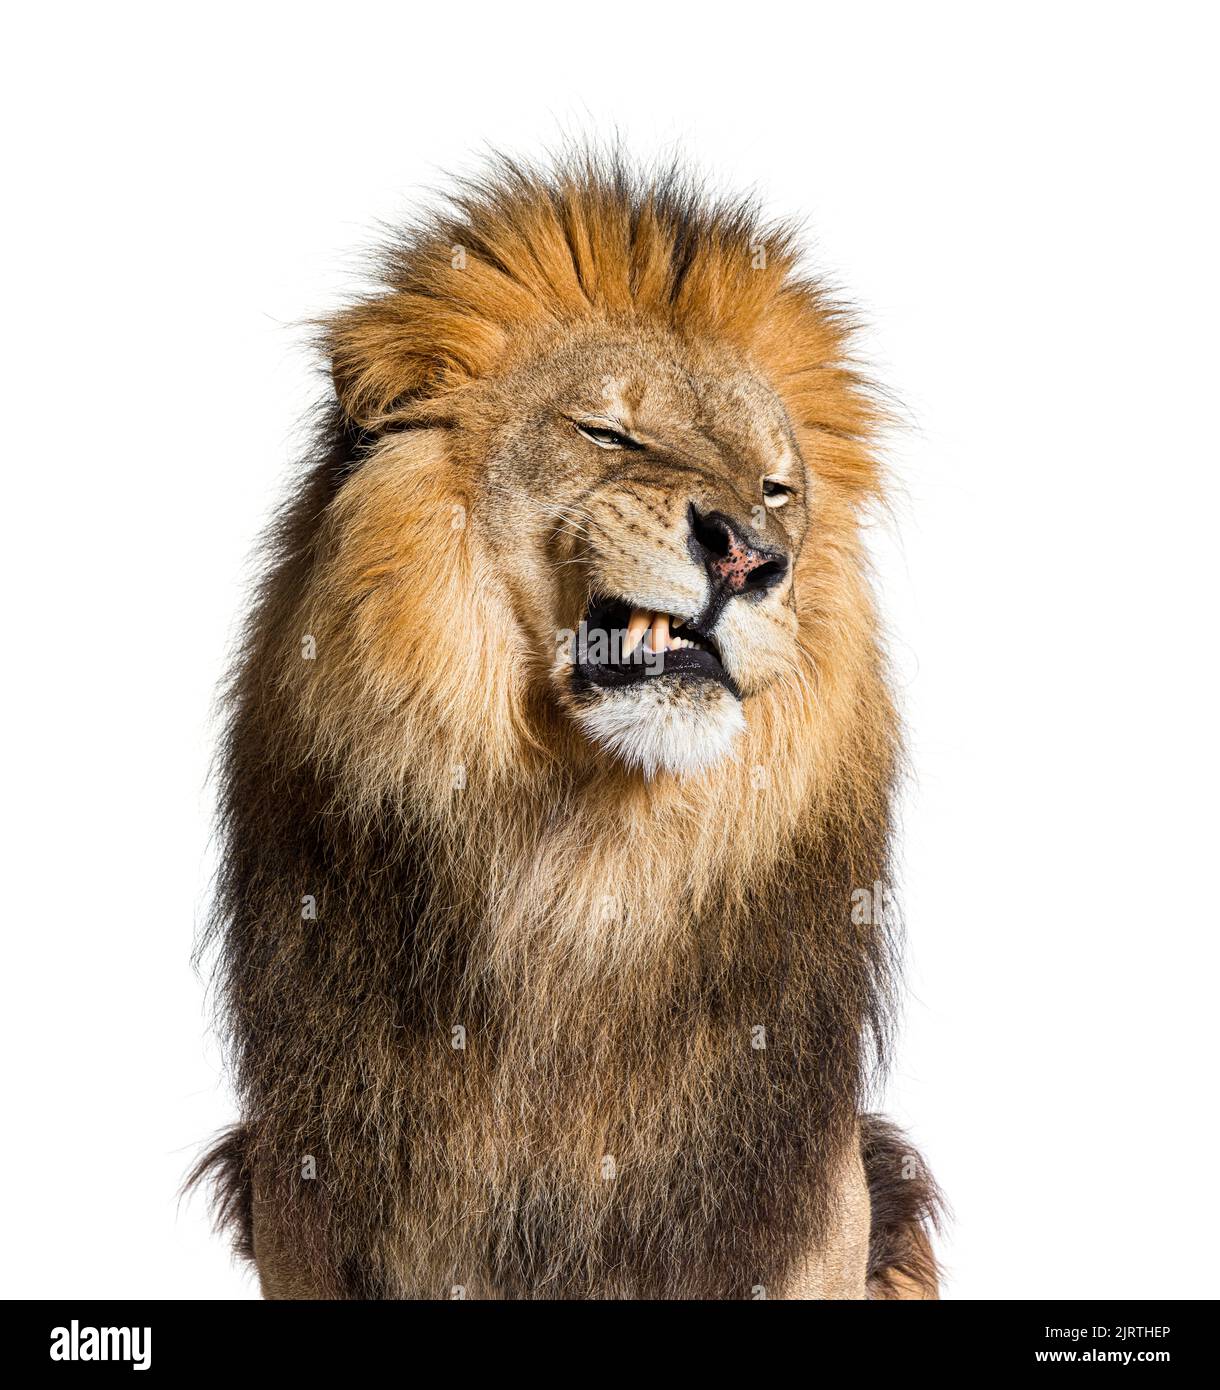 León tirando de una cara, mirando la cámara y mostrando sus dientes, aislados sobre blanco Foto de stock